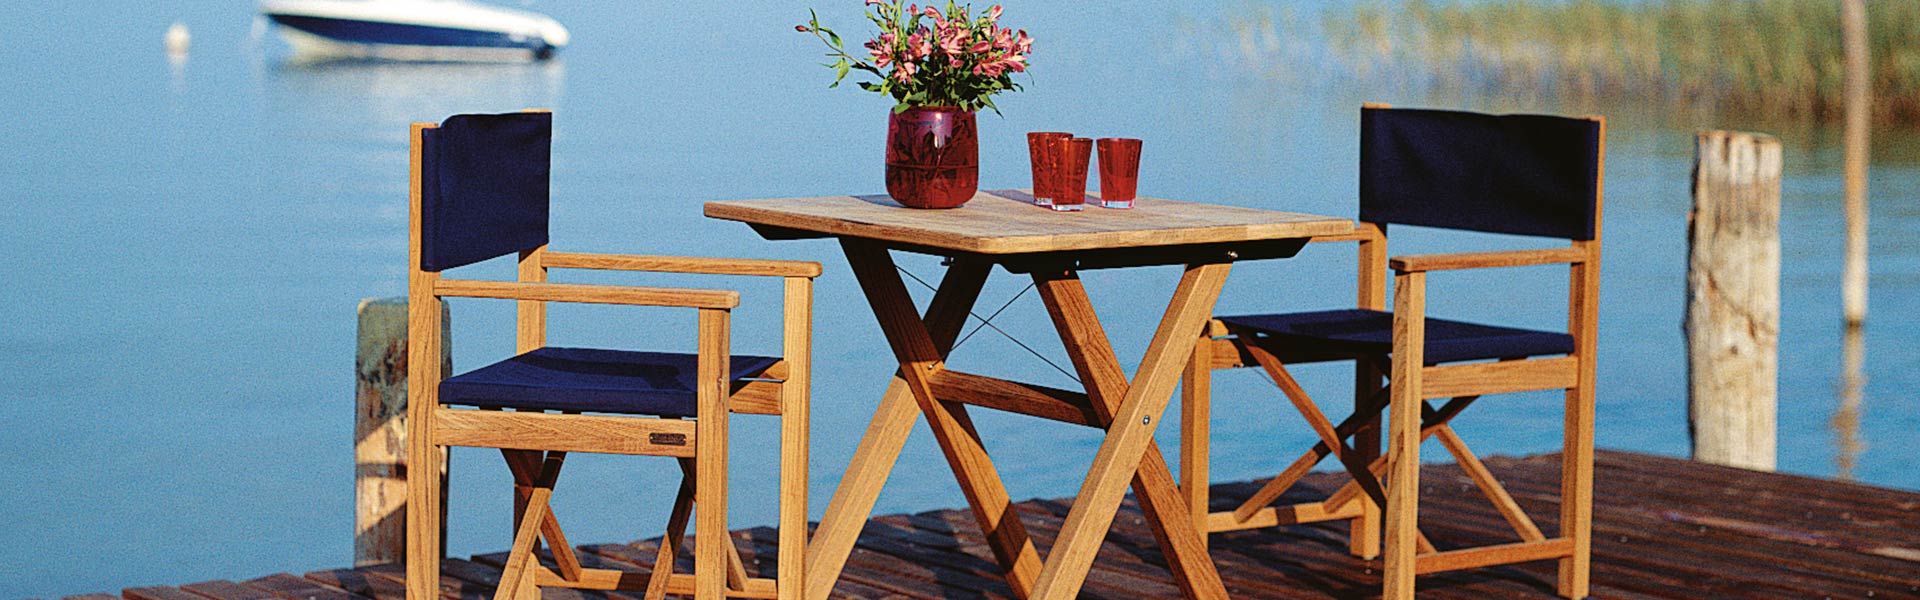 Huber Mein Lebensgefühl Garten Terrasse Balkon Gartenmöbel Weishäupl Sitzgruppe Cross Tisch und Cabin Sessel